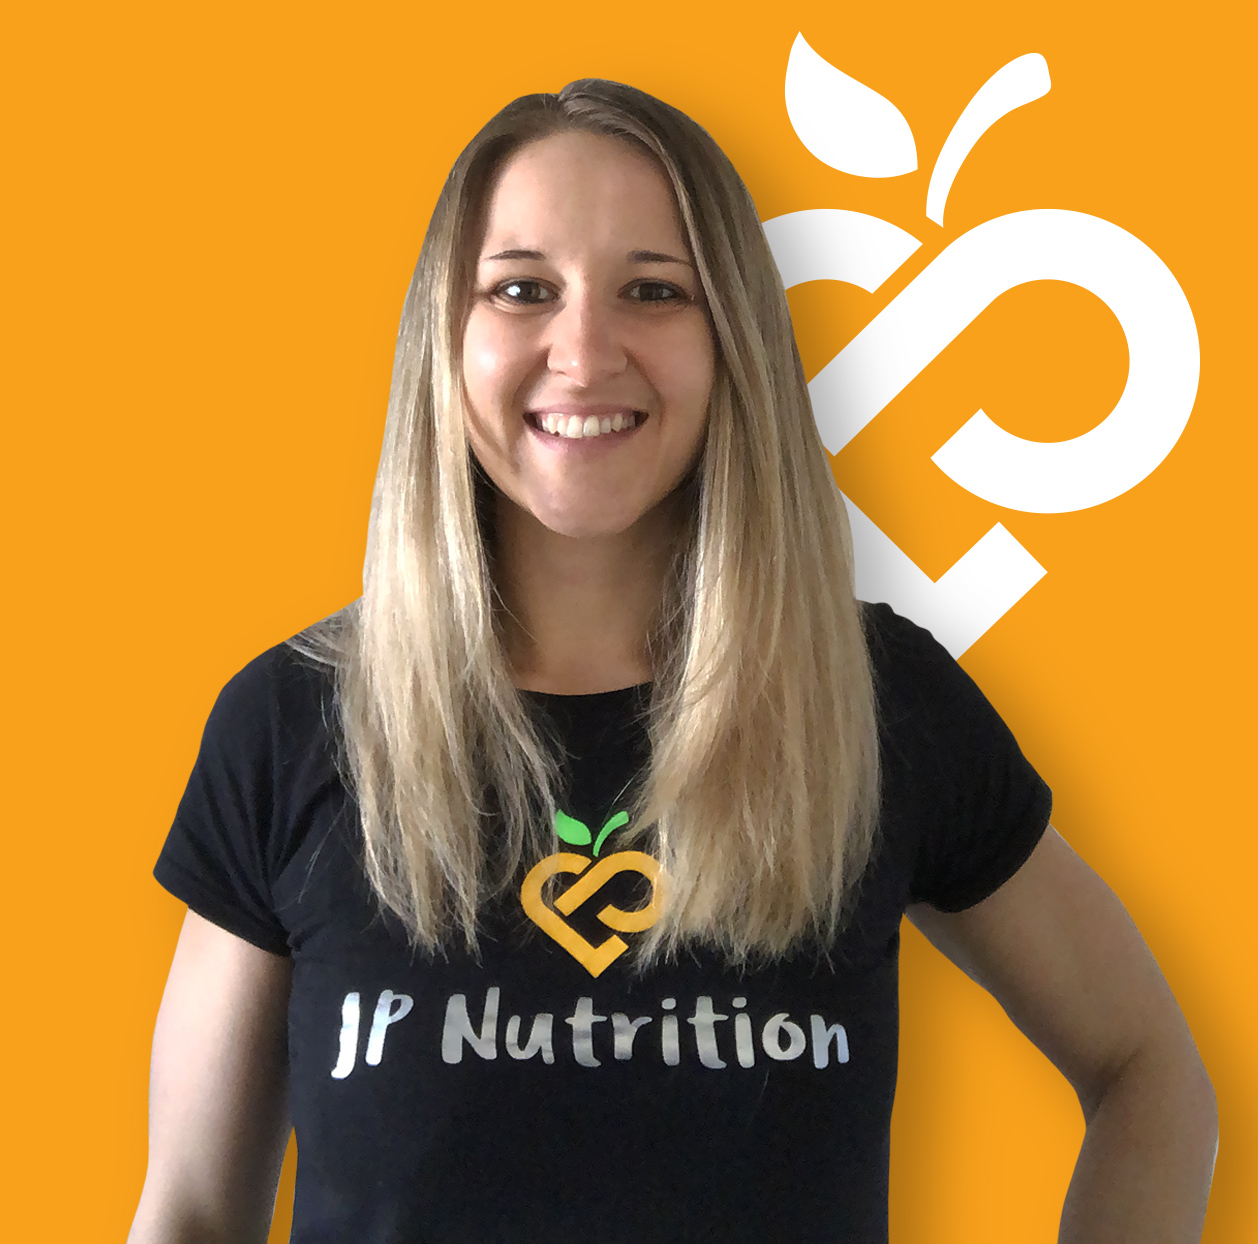 I'm Jen from JP Nutrition